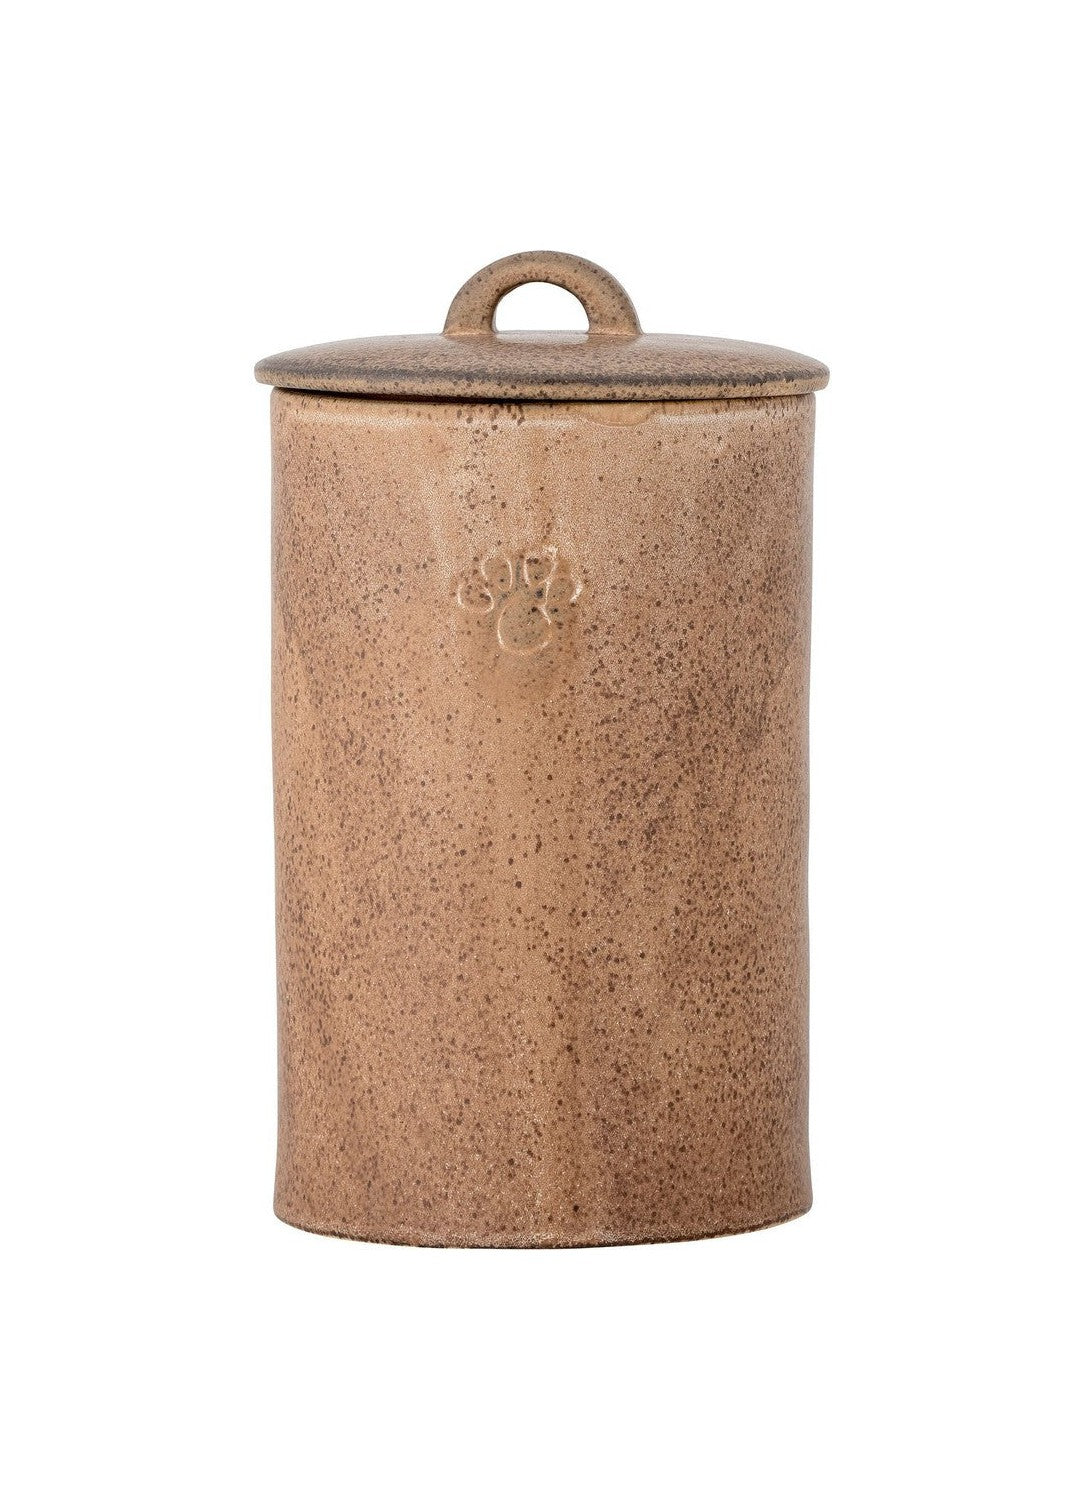 Bloomingville Buddy Jar con tapa, marrón, gres